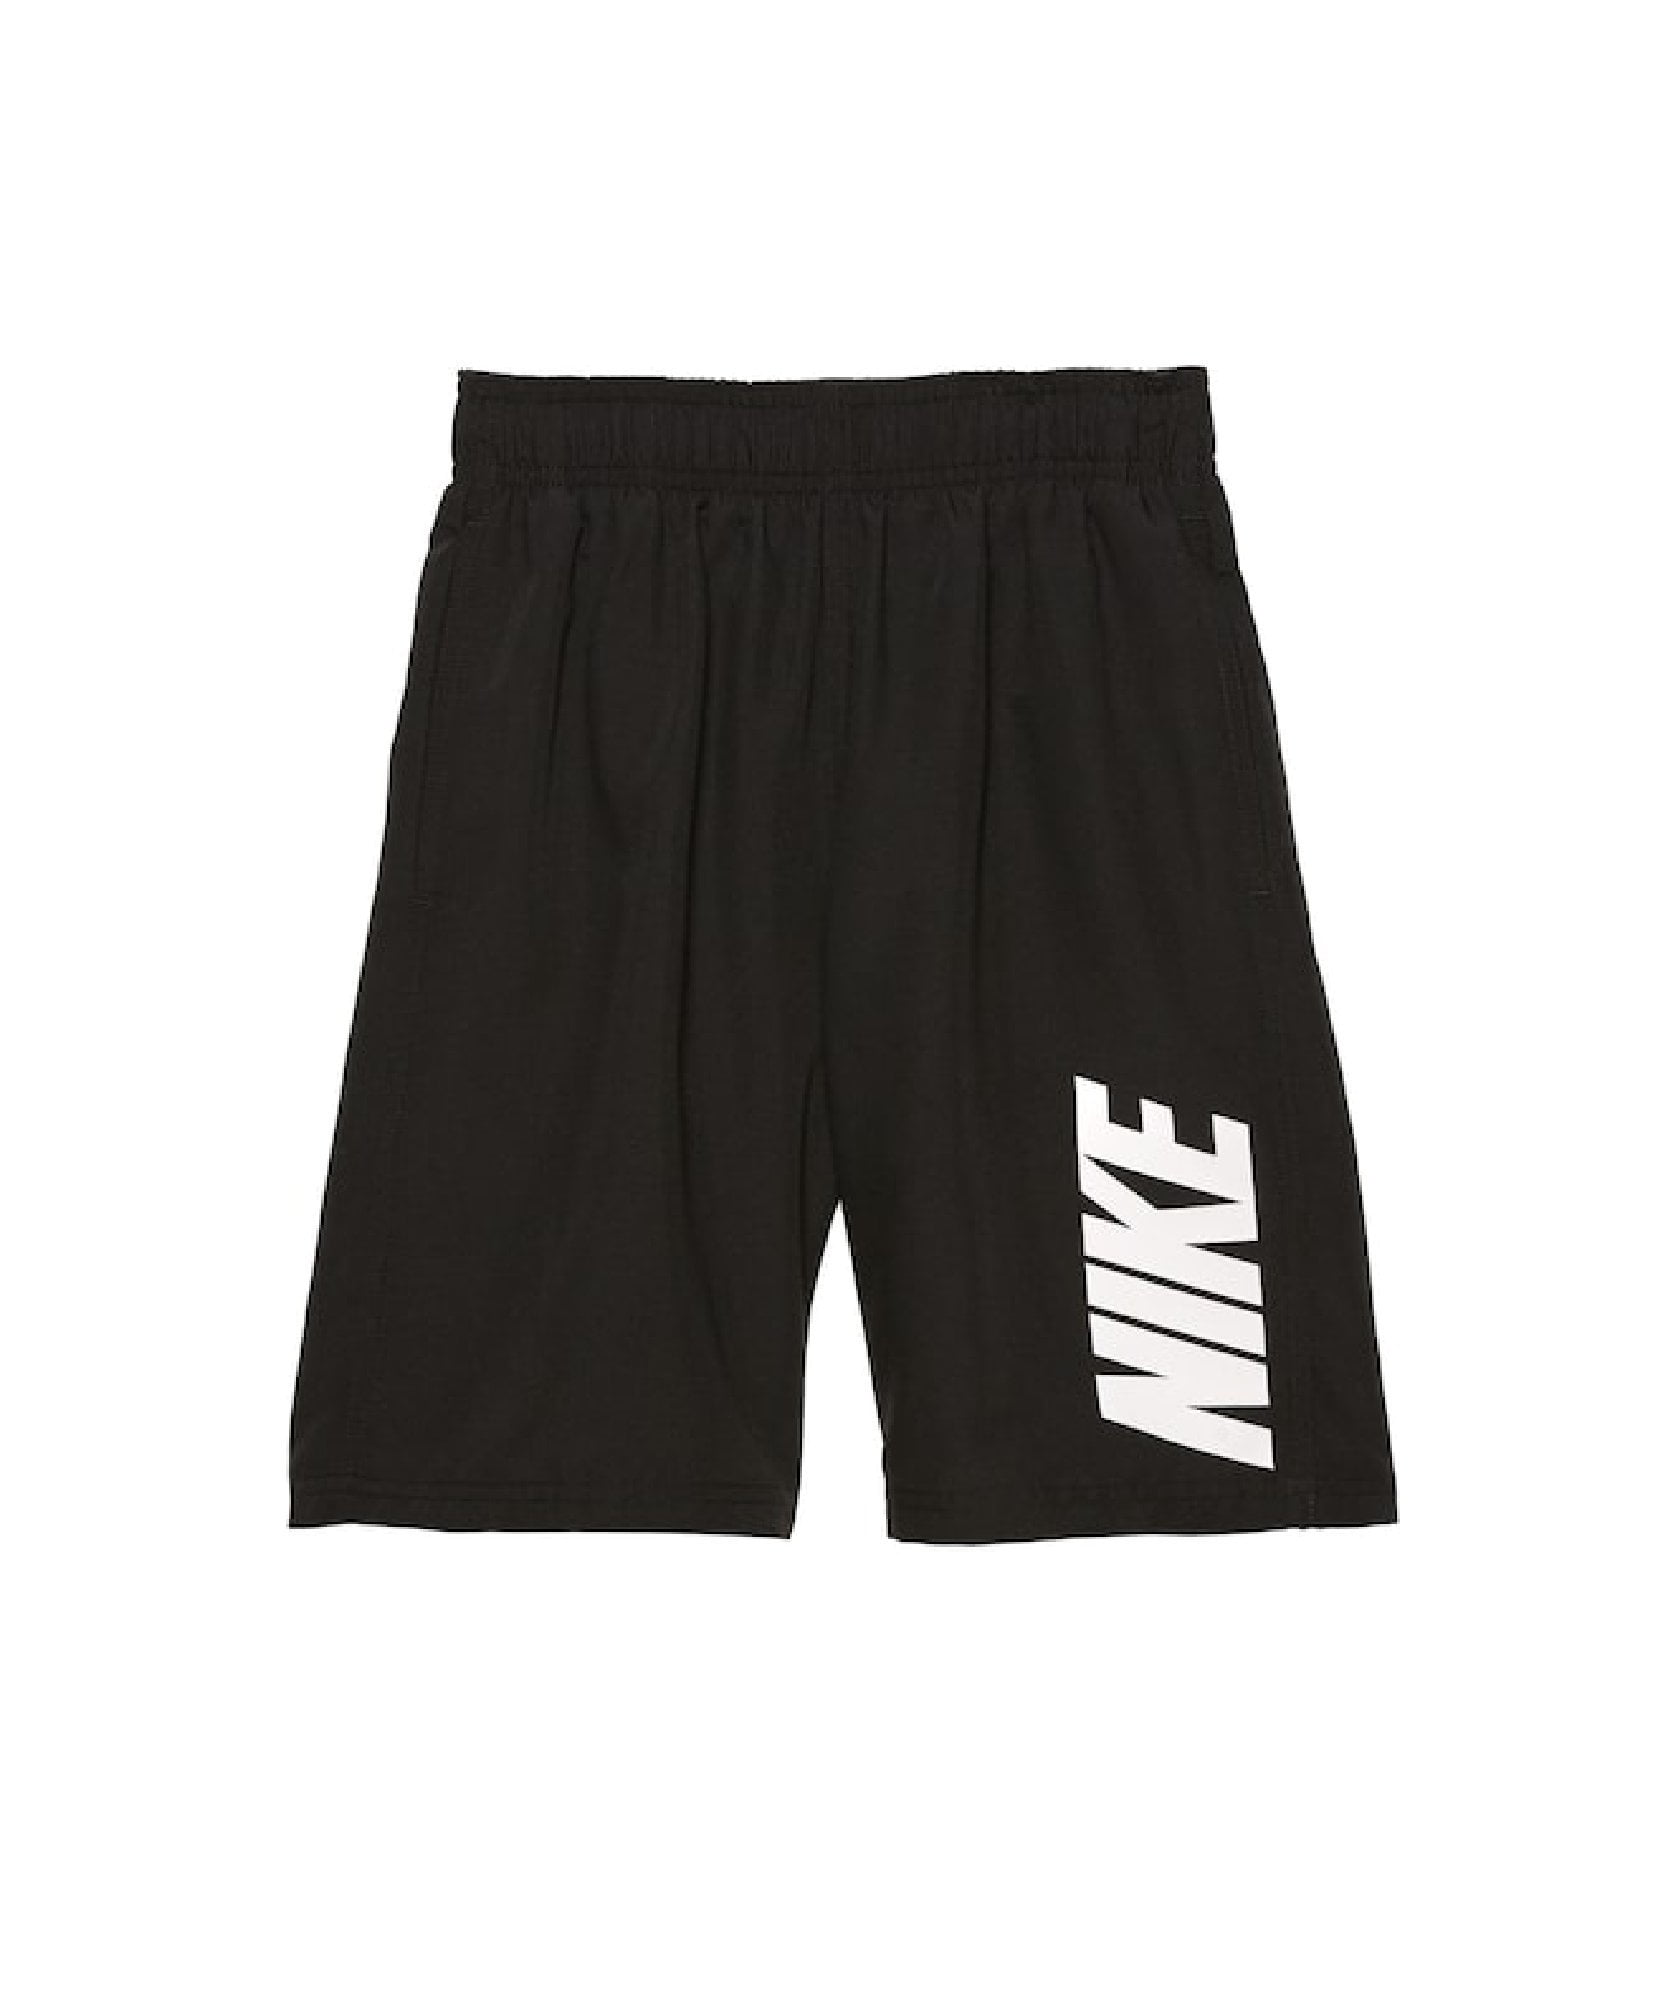 NIKE Boys Breaker Volley Shorts (S) - Walmart.com - Walmart.com